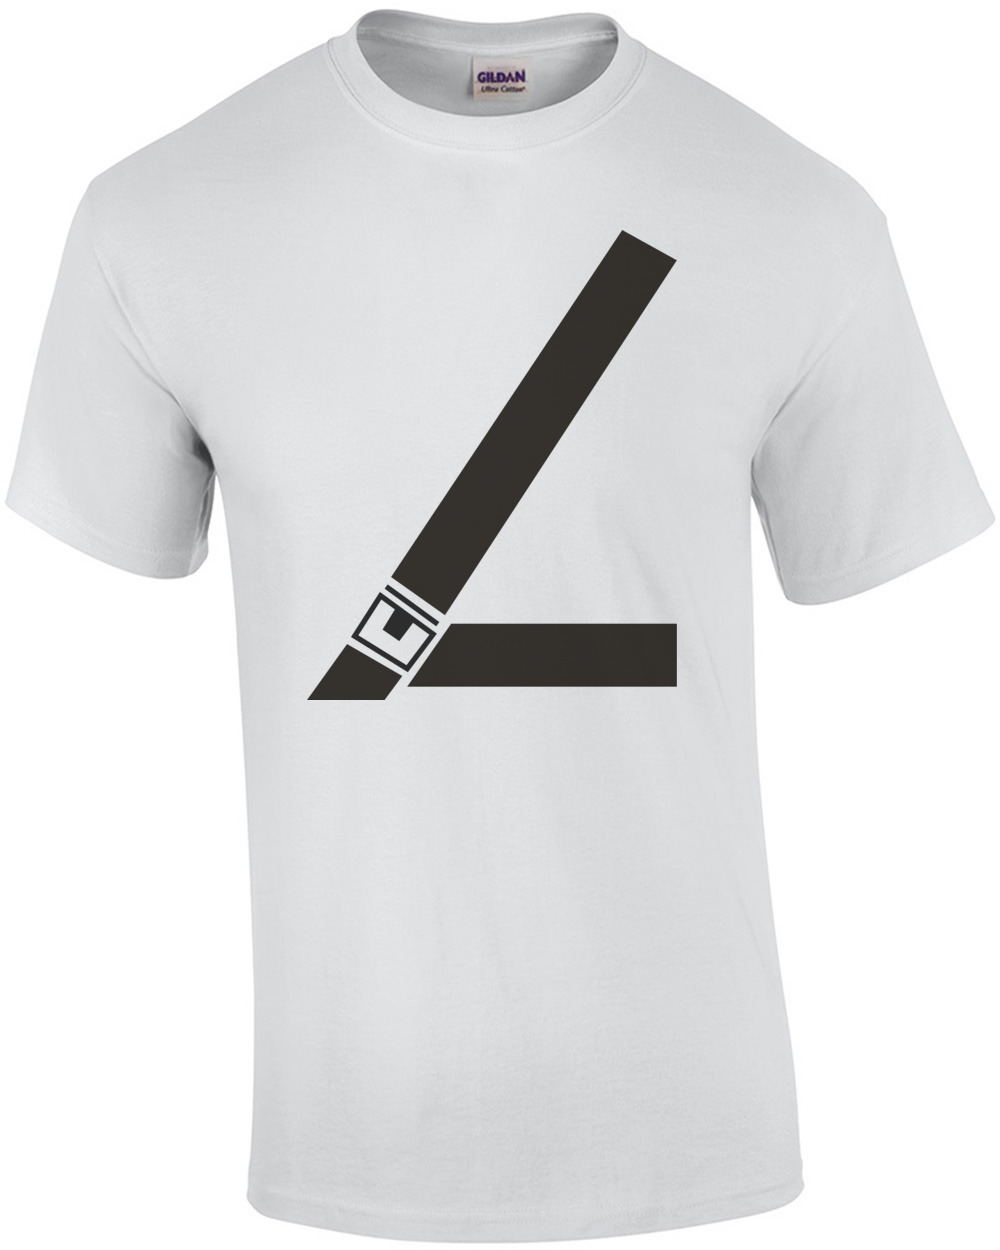 fake-seatbelt-tshirt-mens-regular-white.jpg